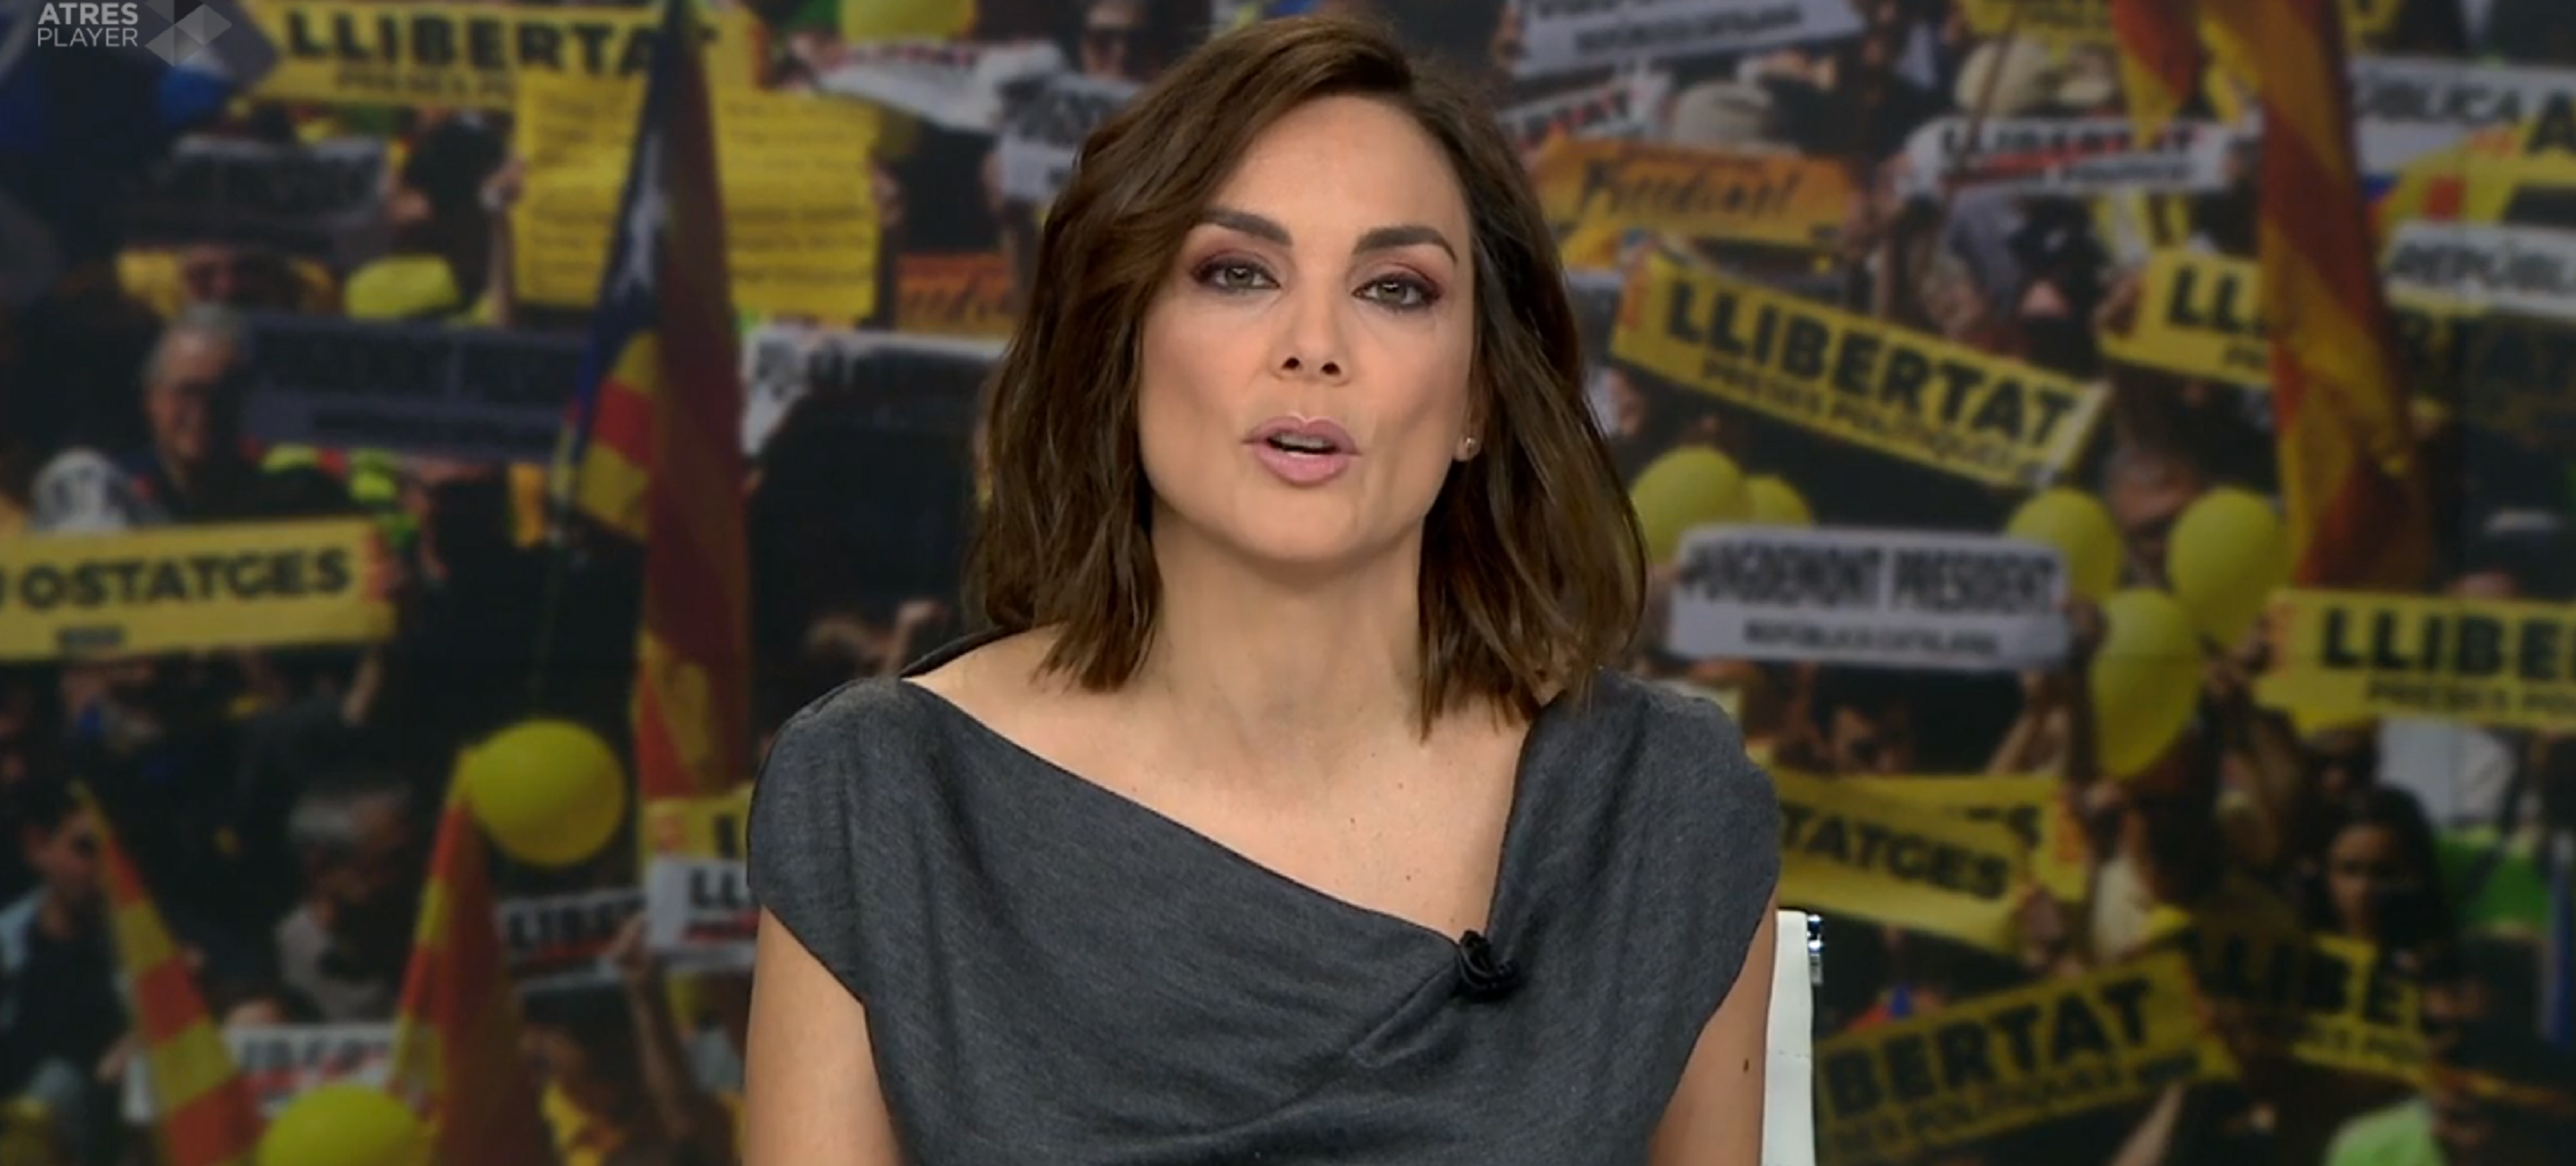 Una presentadora d'Antena 3 s'ofega quan ha de dir "presos polítics"